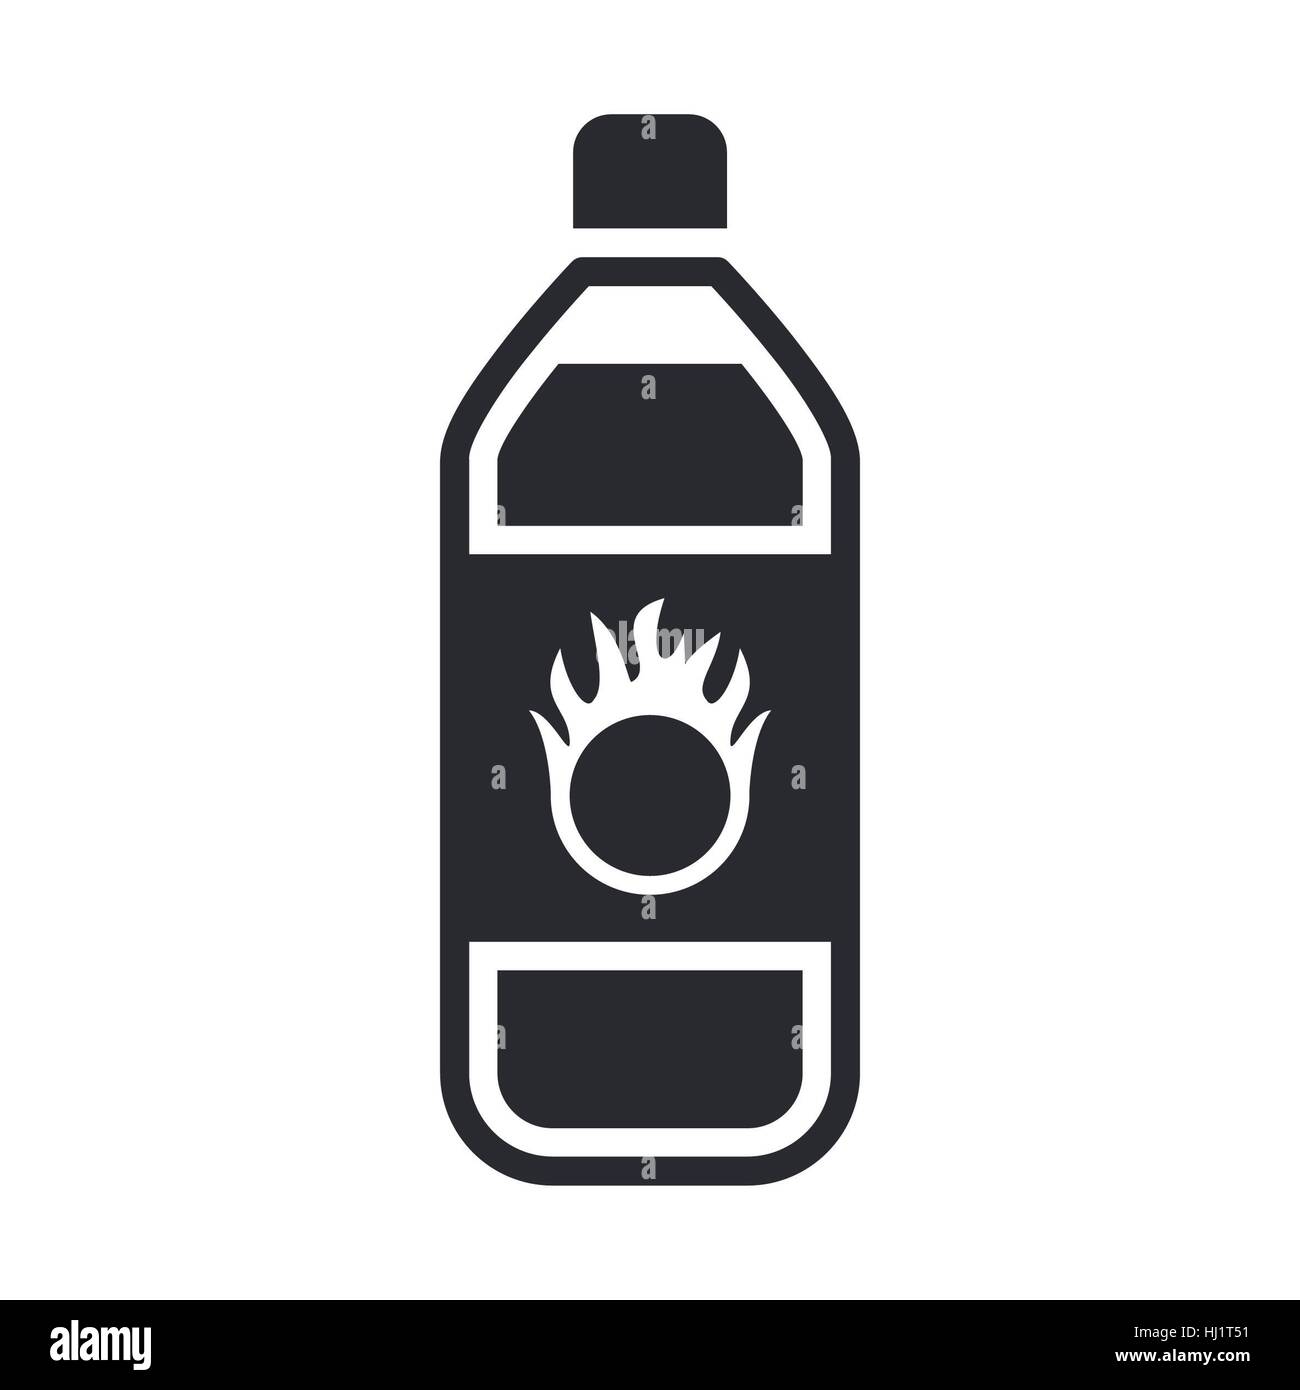 https://c8.alamy.com/comp/HJ1T51/vector-illustration-of-single-isolated-dangerous-bottle-icon-HJ1T51.jpg